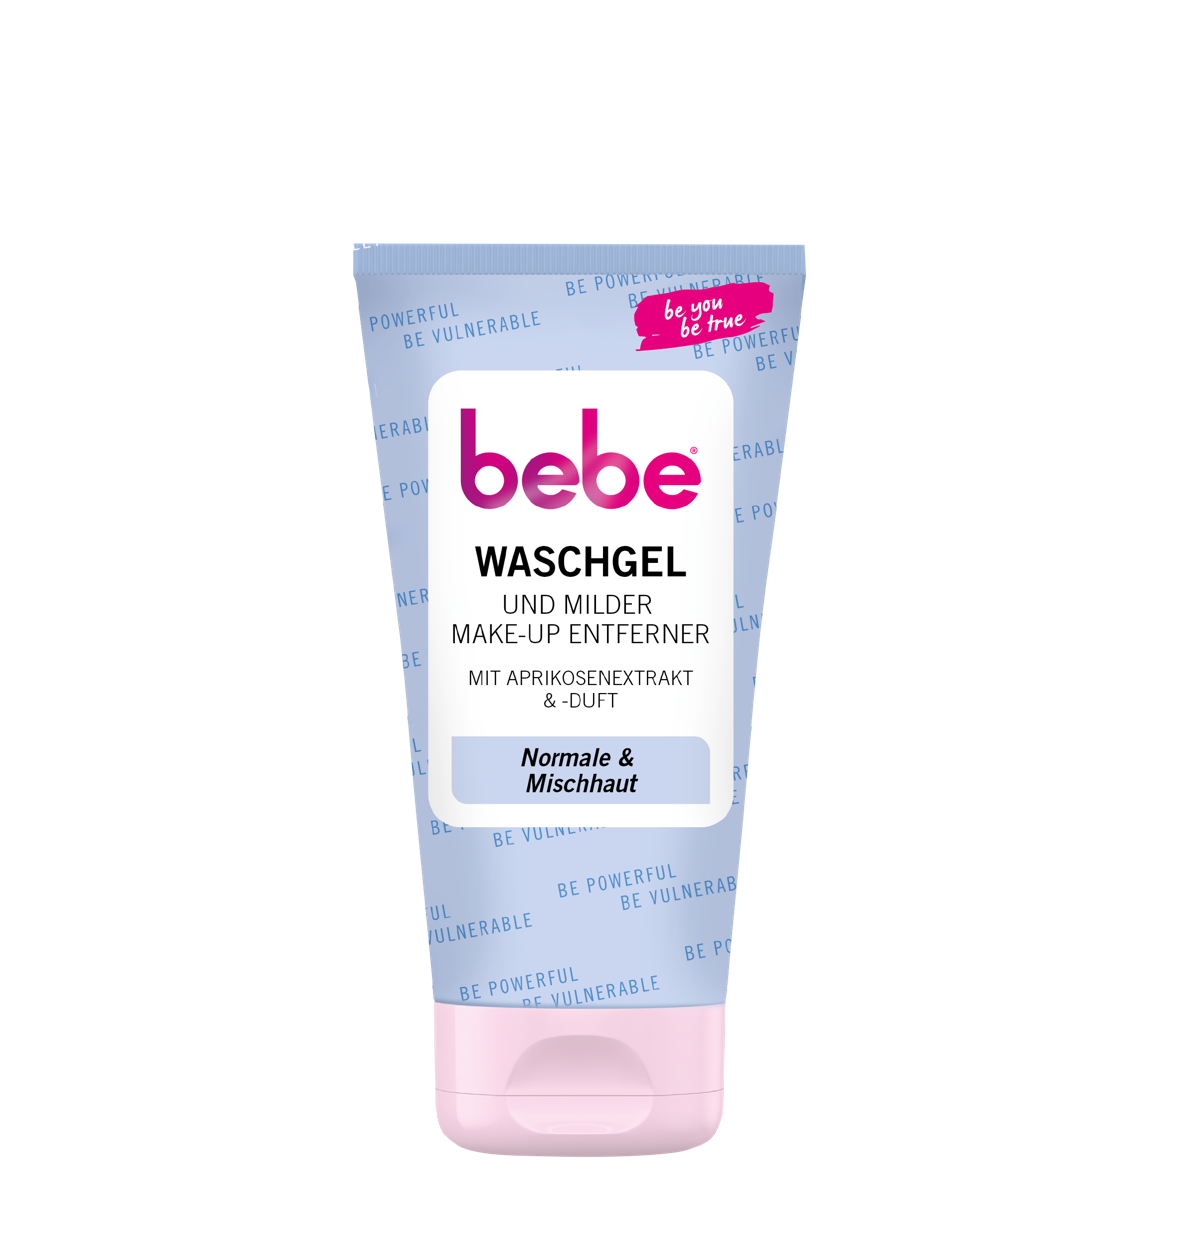 bebe® Waschgel und milder Make-Up Entferner mit Aprikosenextrakt & -duft